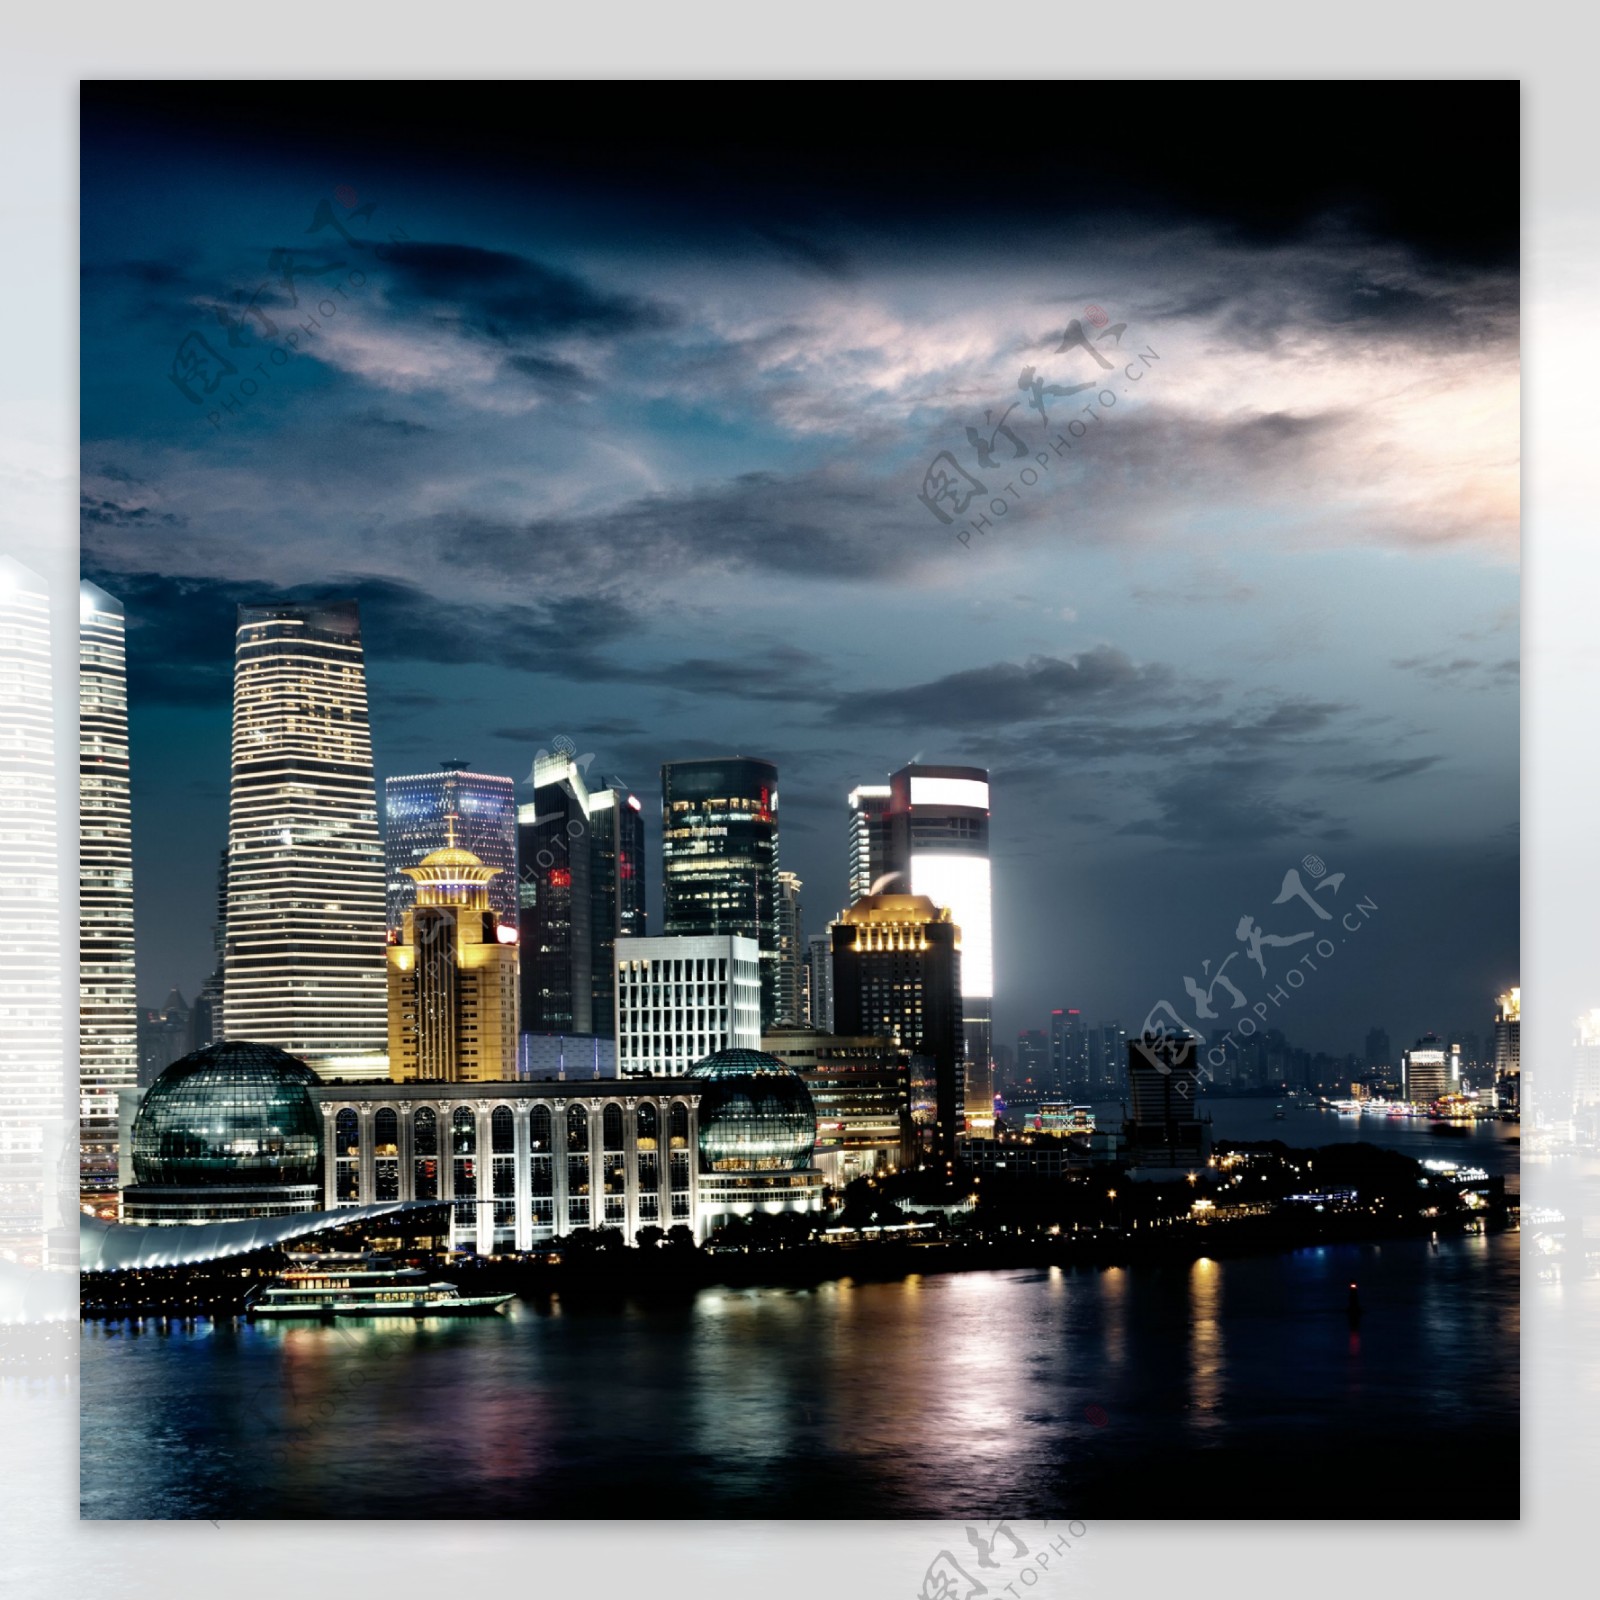 傍晚时分的城市高楼和江河图片